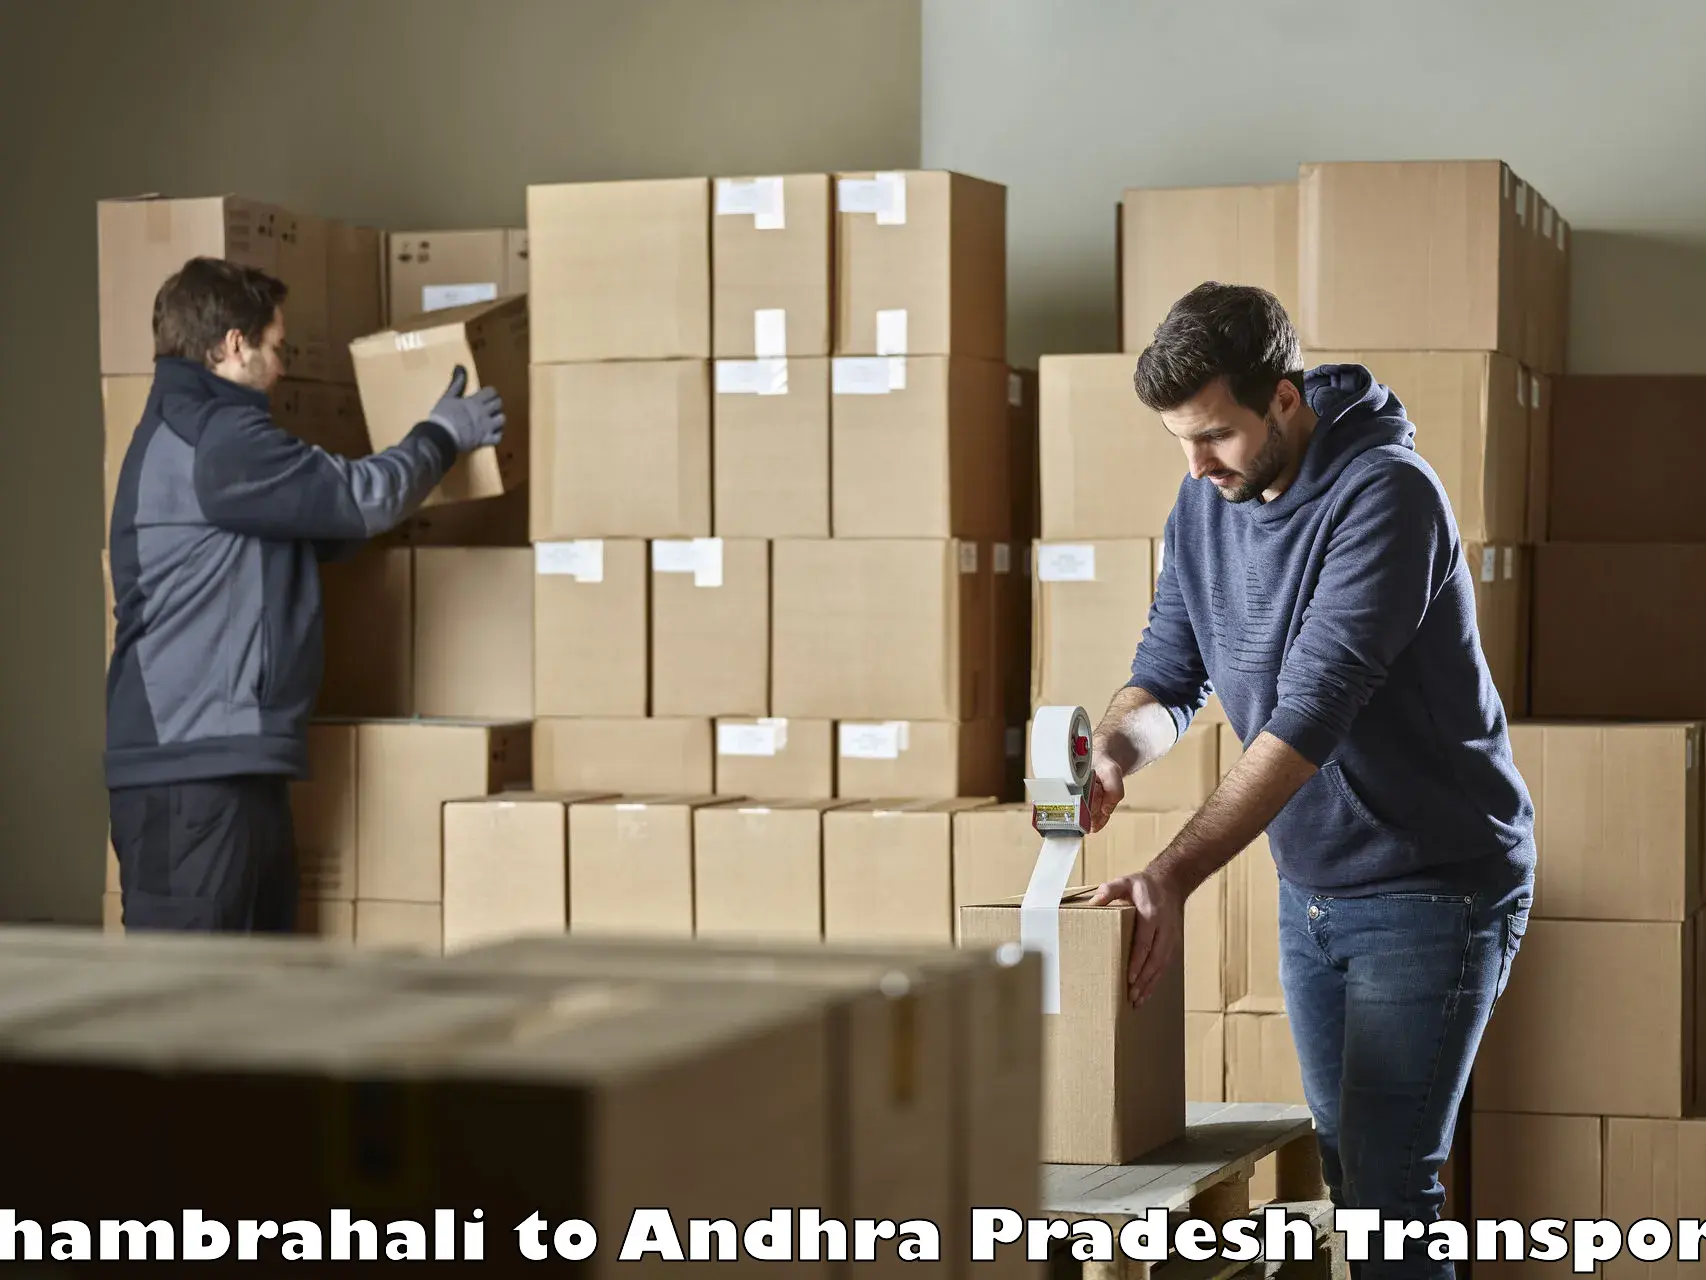 Daily transport service Thambrahali to Andhra Pradesh